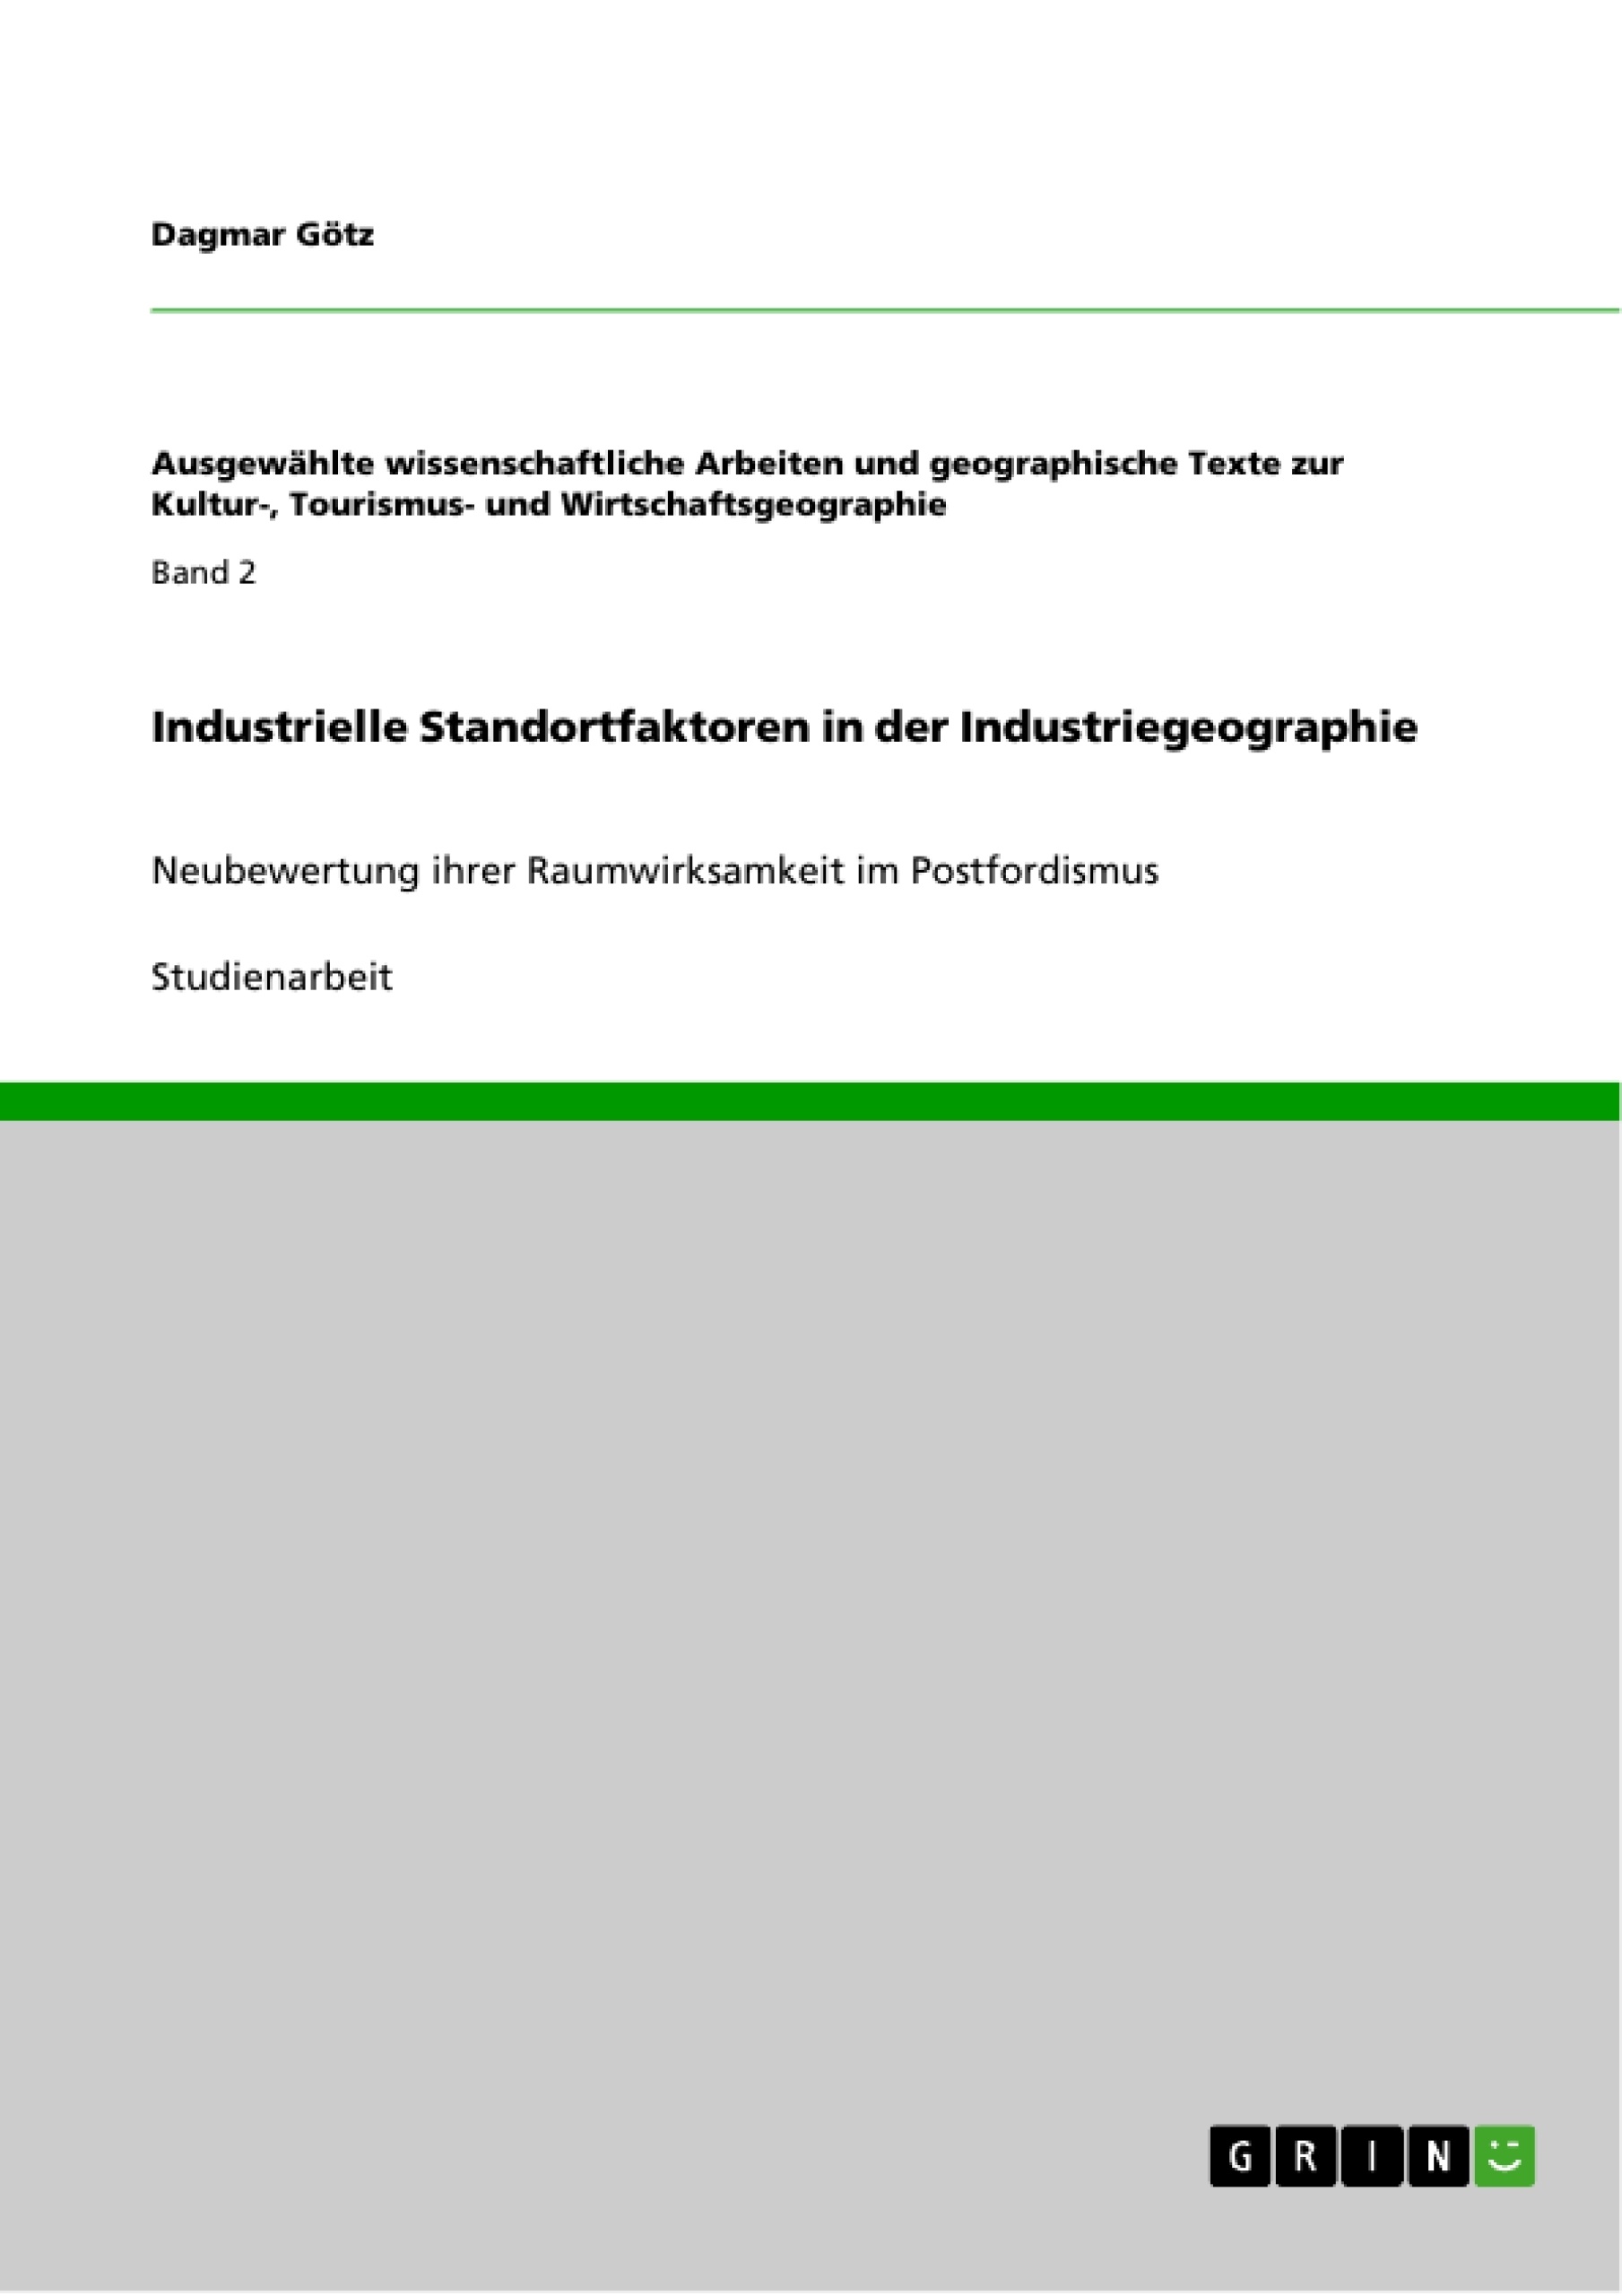 Title: Industrielle Standortfaktoren in der Industriegeographie